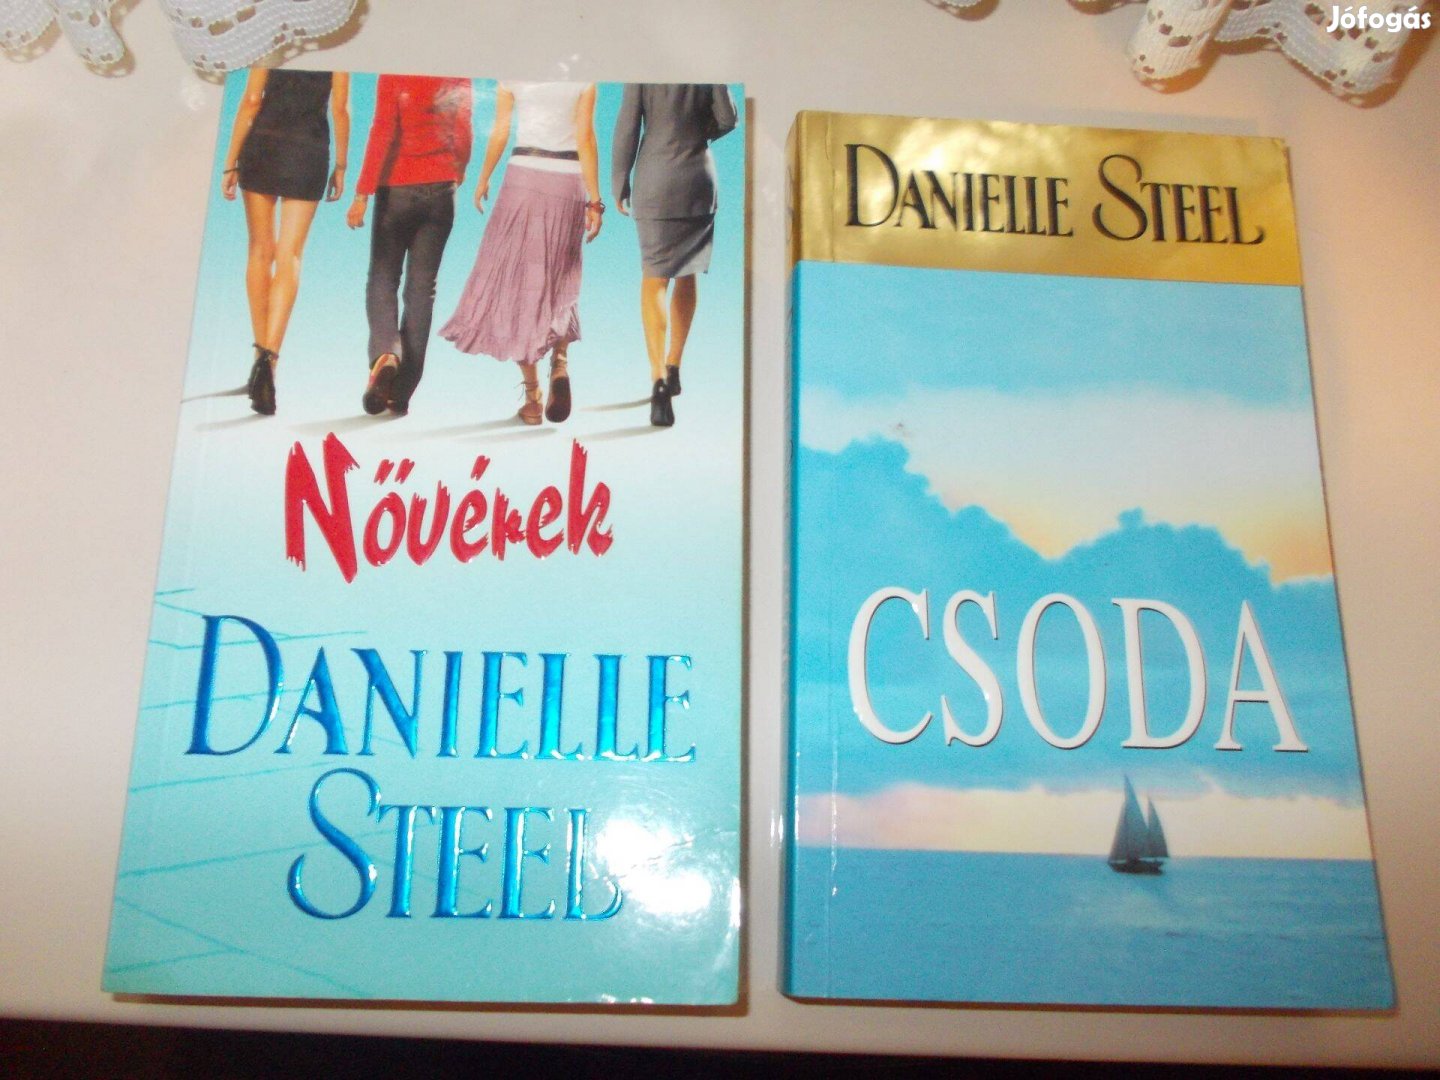 Danielle Steel regények egyben/M